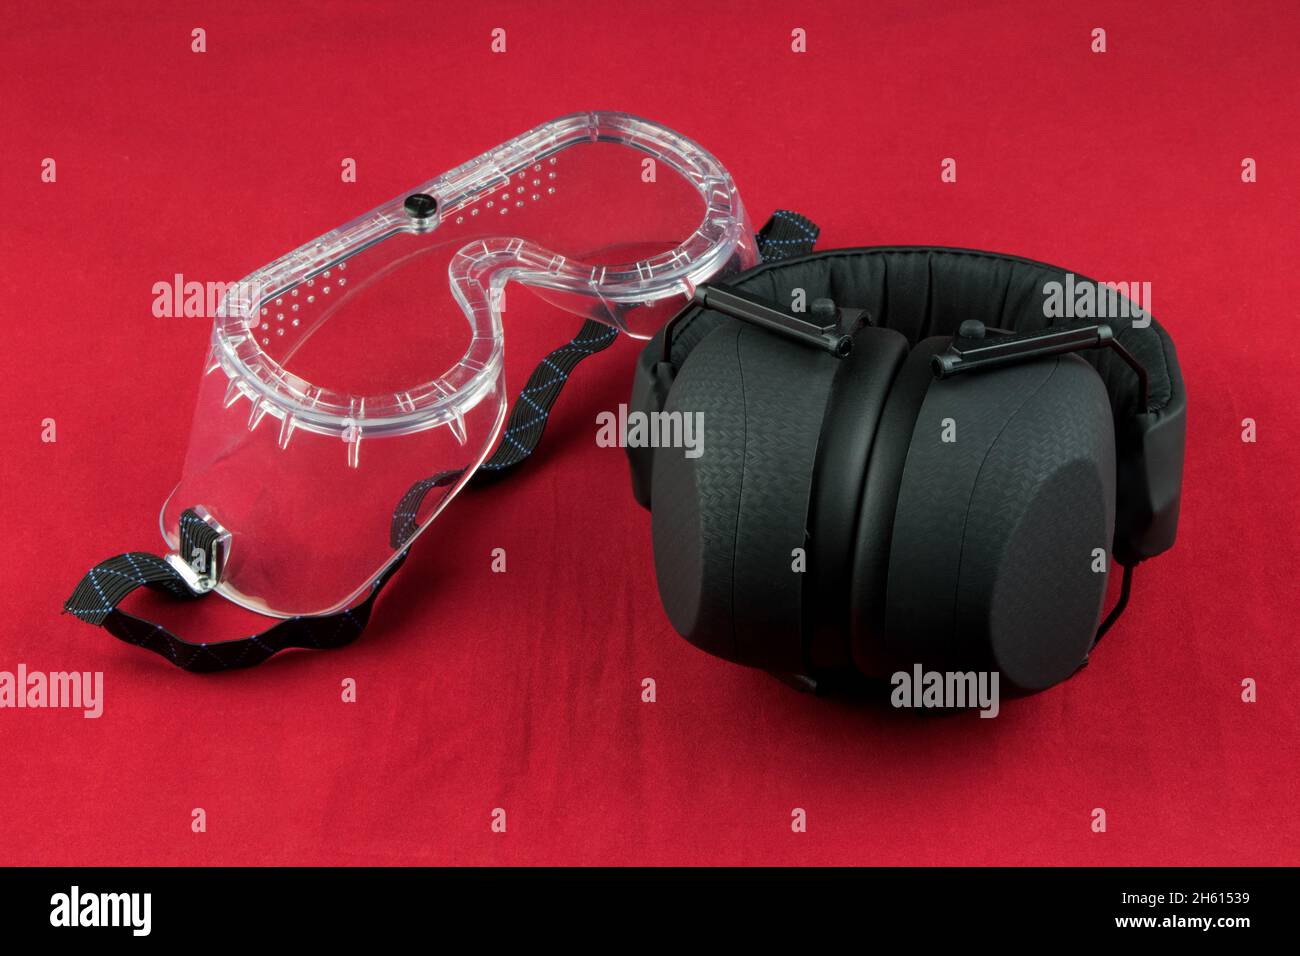 Protections auditives et lunettes de sécurité isolées sur fond rouge Banque D'Images